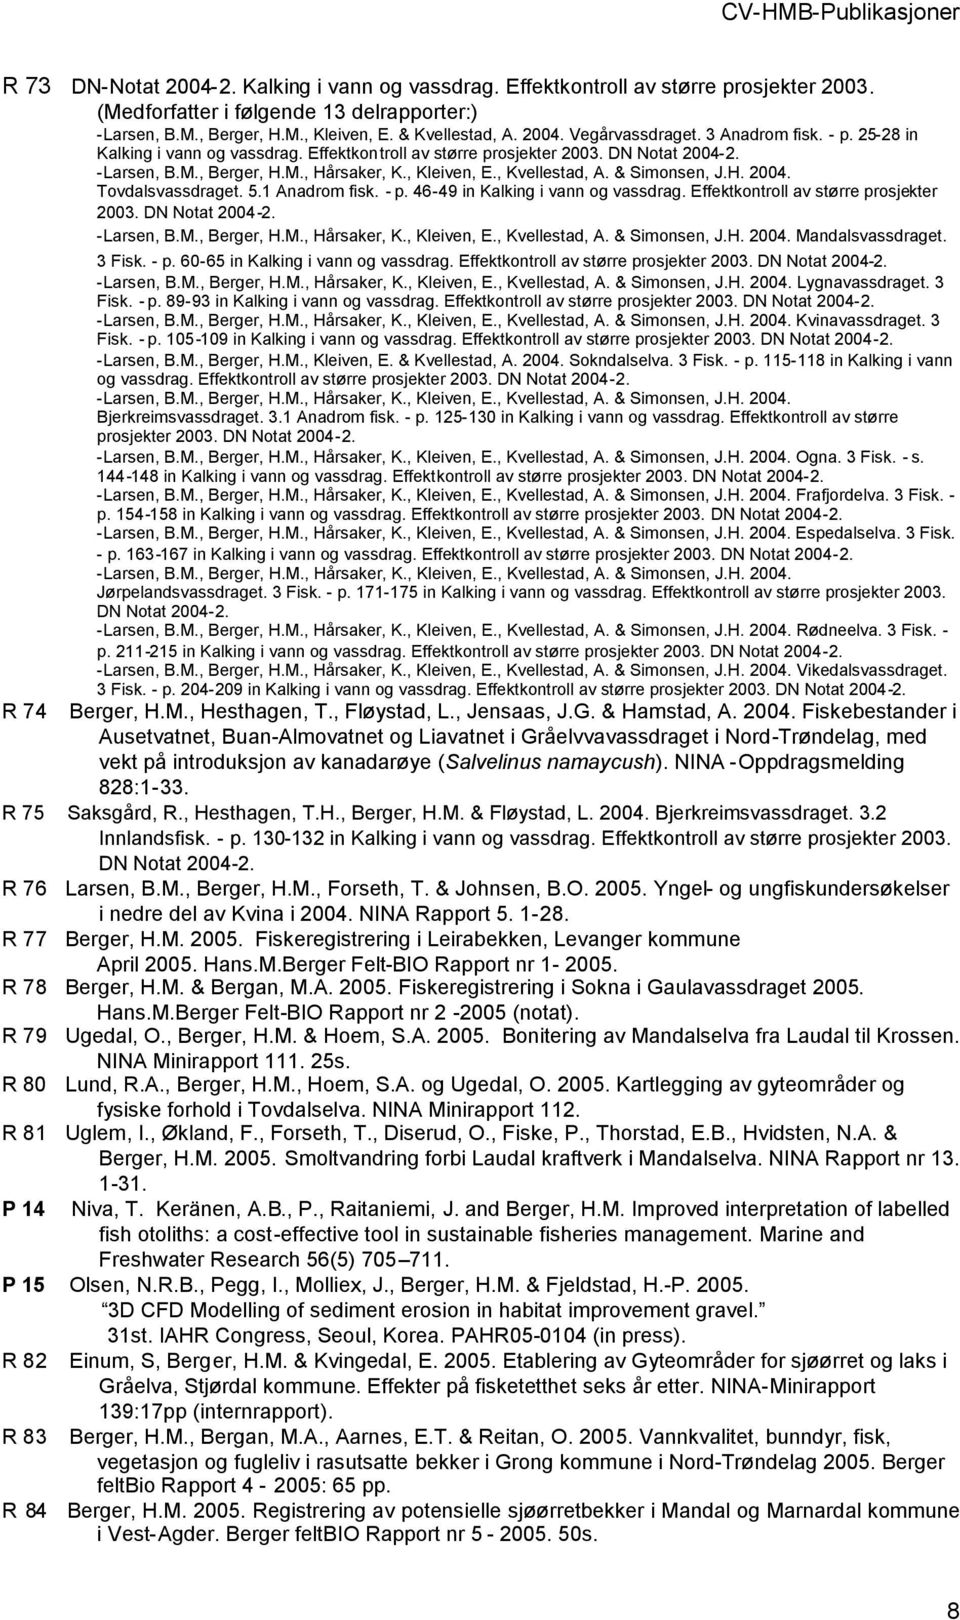 & Simonsen, J.H. 2004. Tovdalsvassdraget. 5.1 Anadrom fisk. - p. 46-49 in Kalking i vann og vassdrag. Effektkontroll av større prosjekter 2003. DN Notat 2004-2. -Larsen, B.M., Berger, H.M., Hårsaker, K.